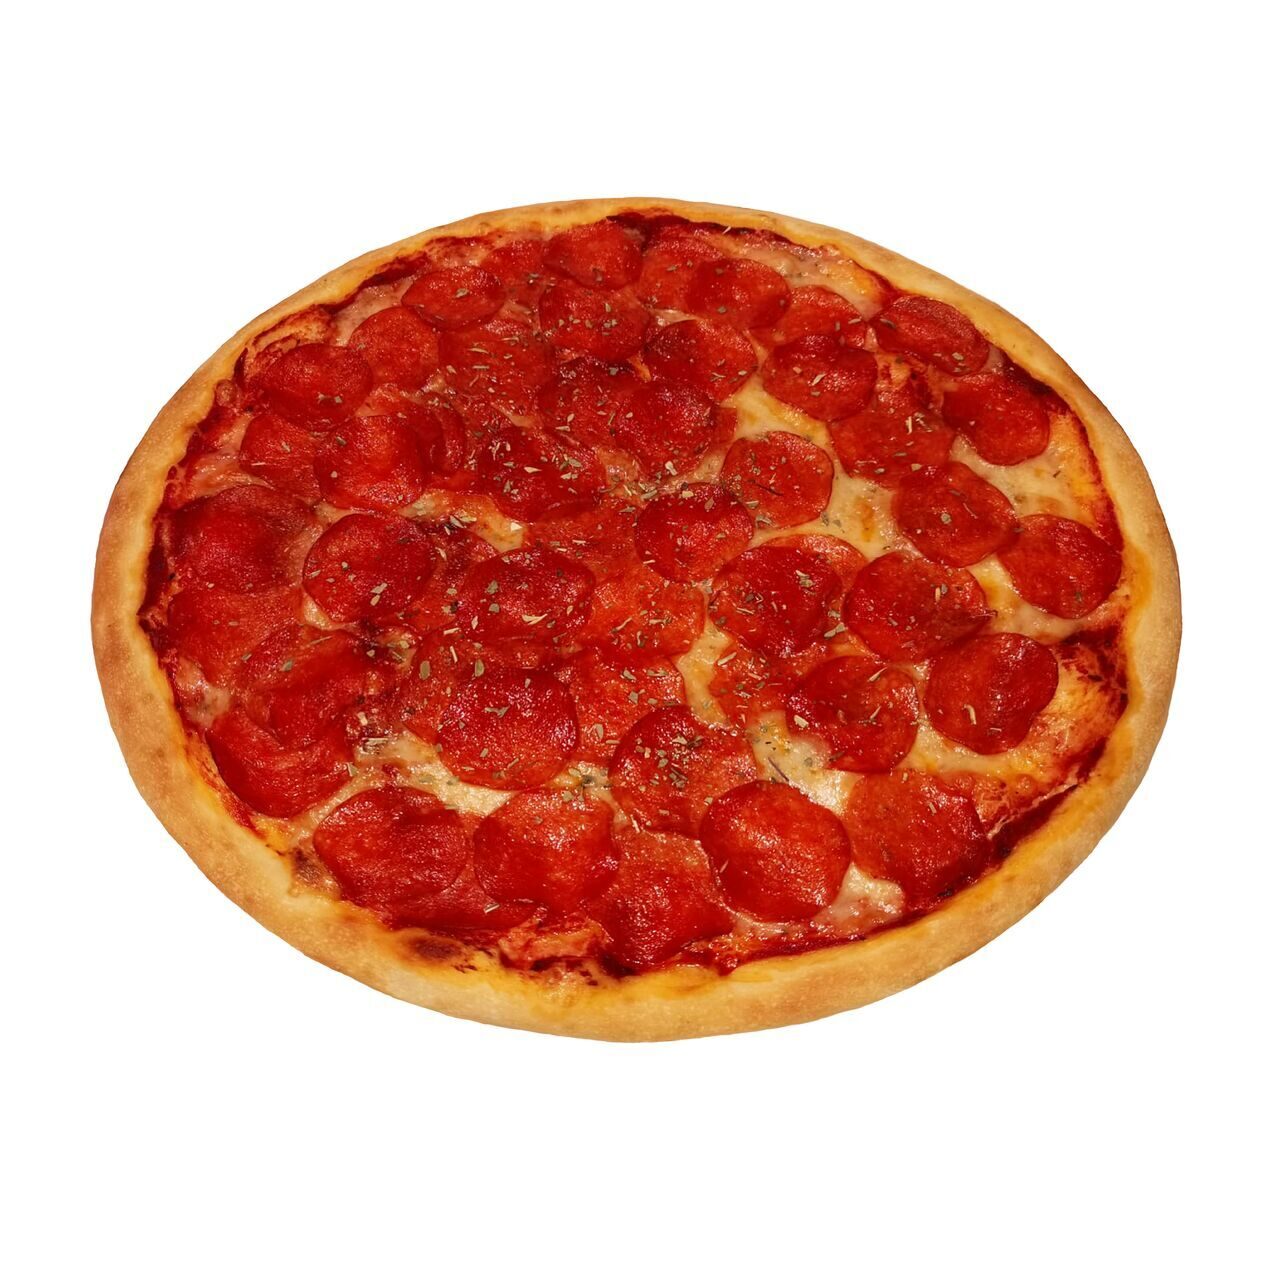 технологическая карта пицца пепперони фото 77